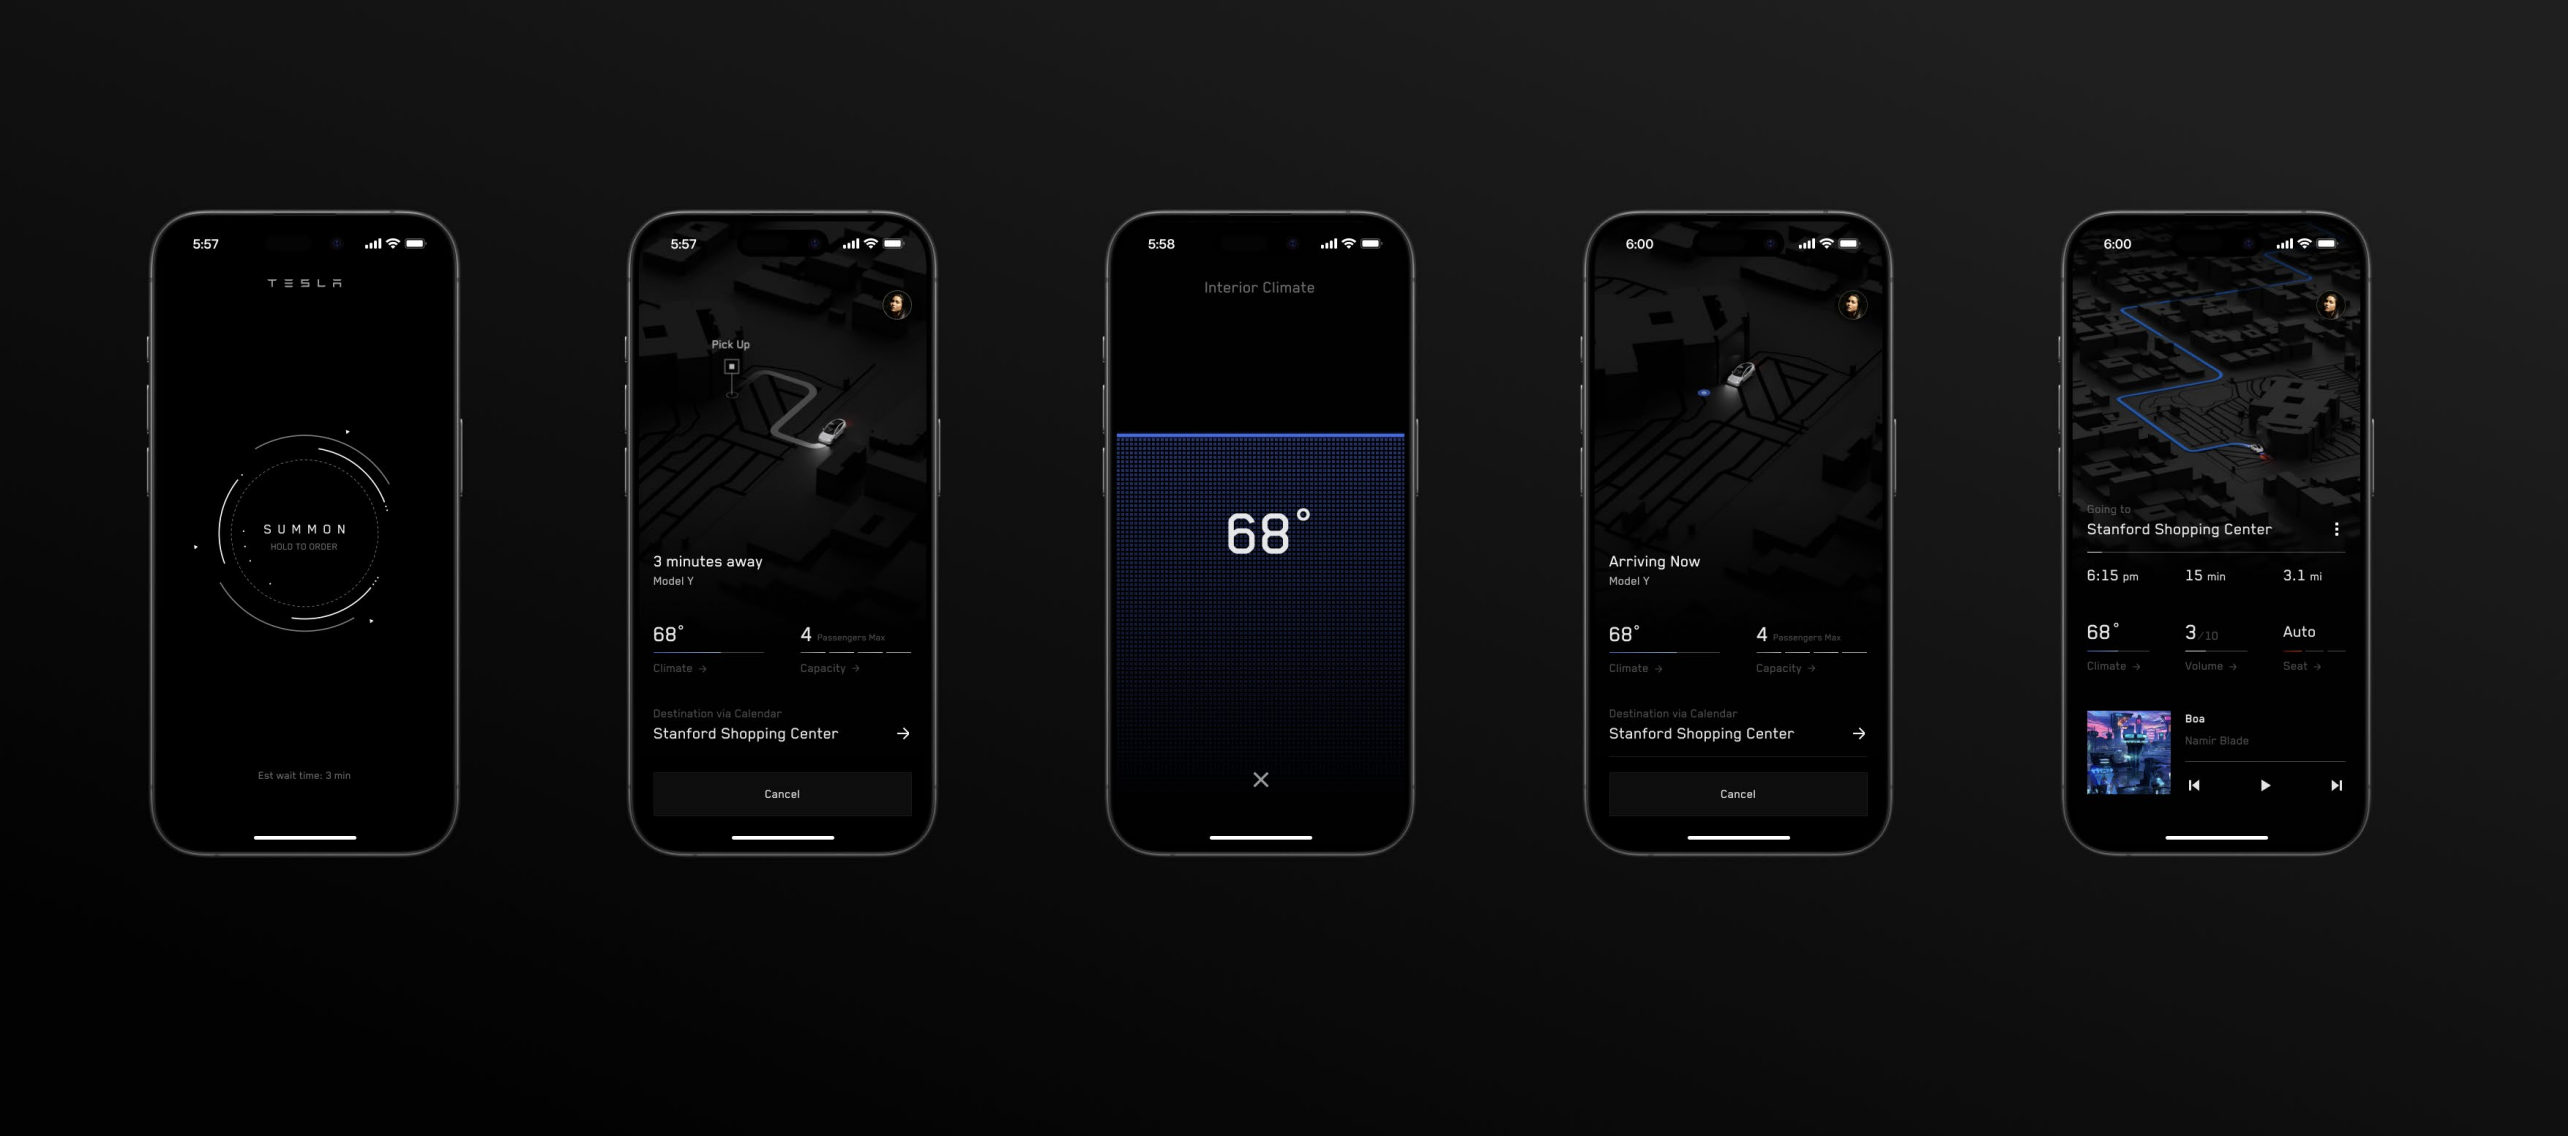 Tesla hat die Funktion zum Anrufen von Robotaxis in seine App integriert